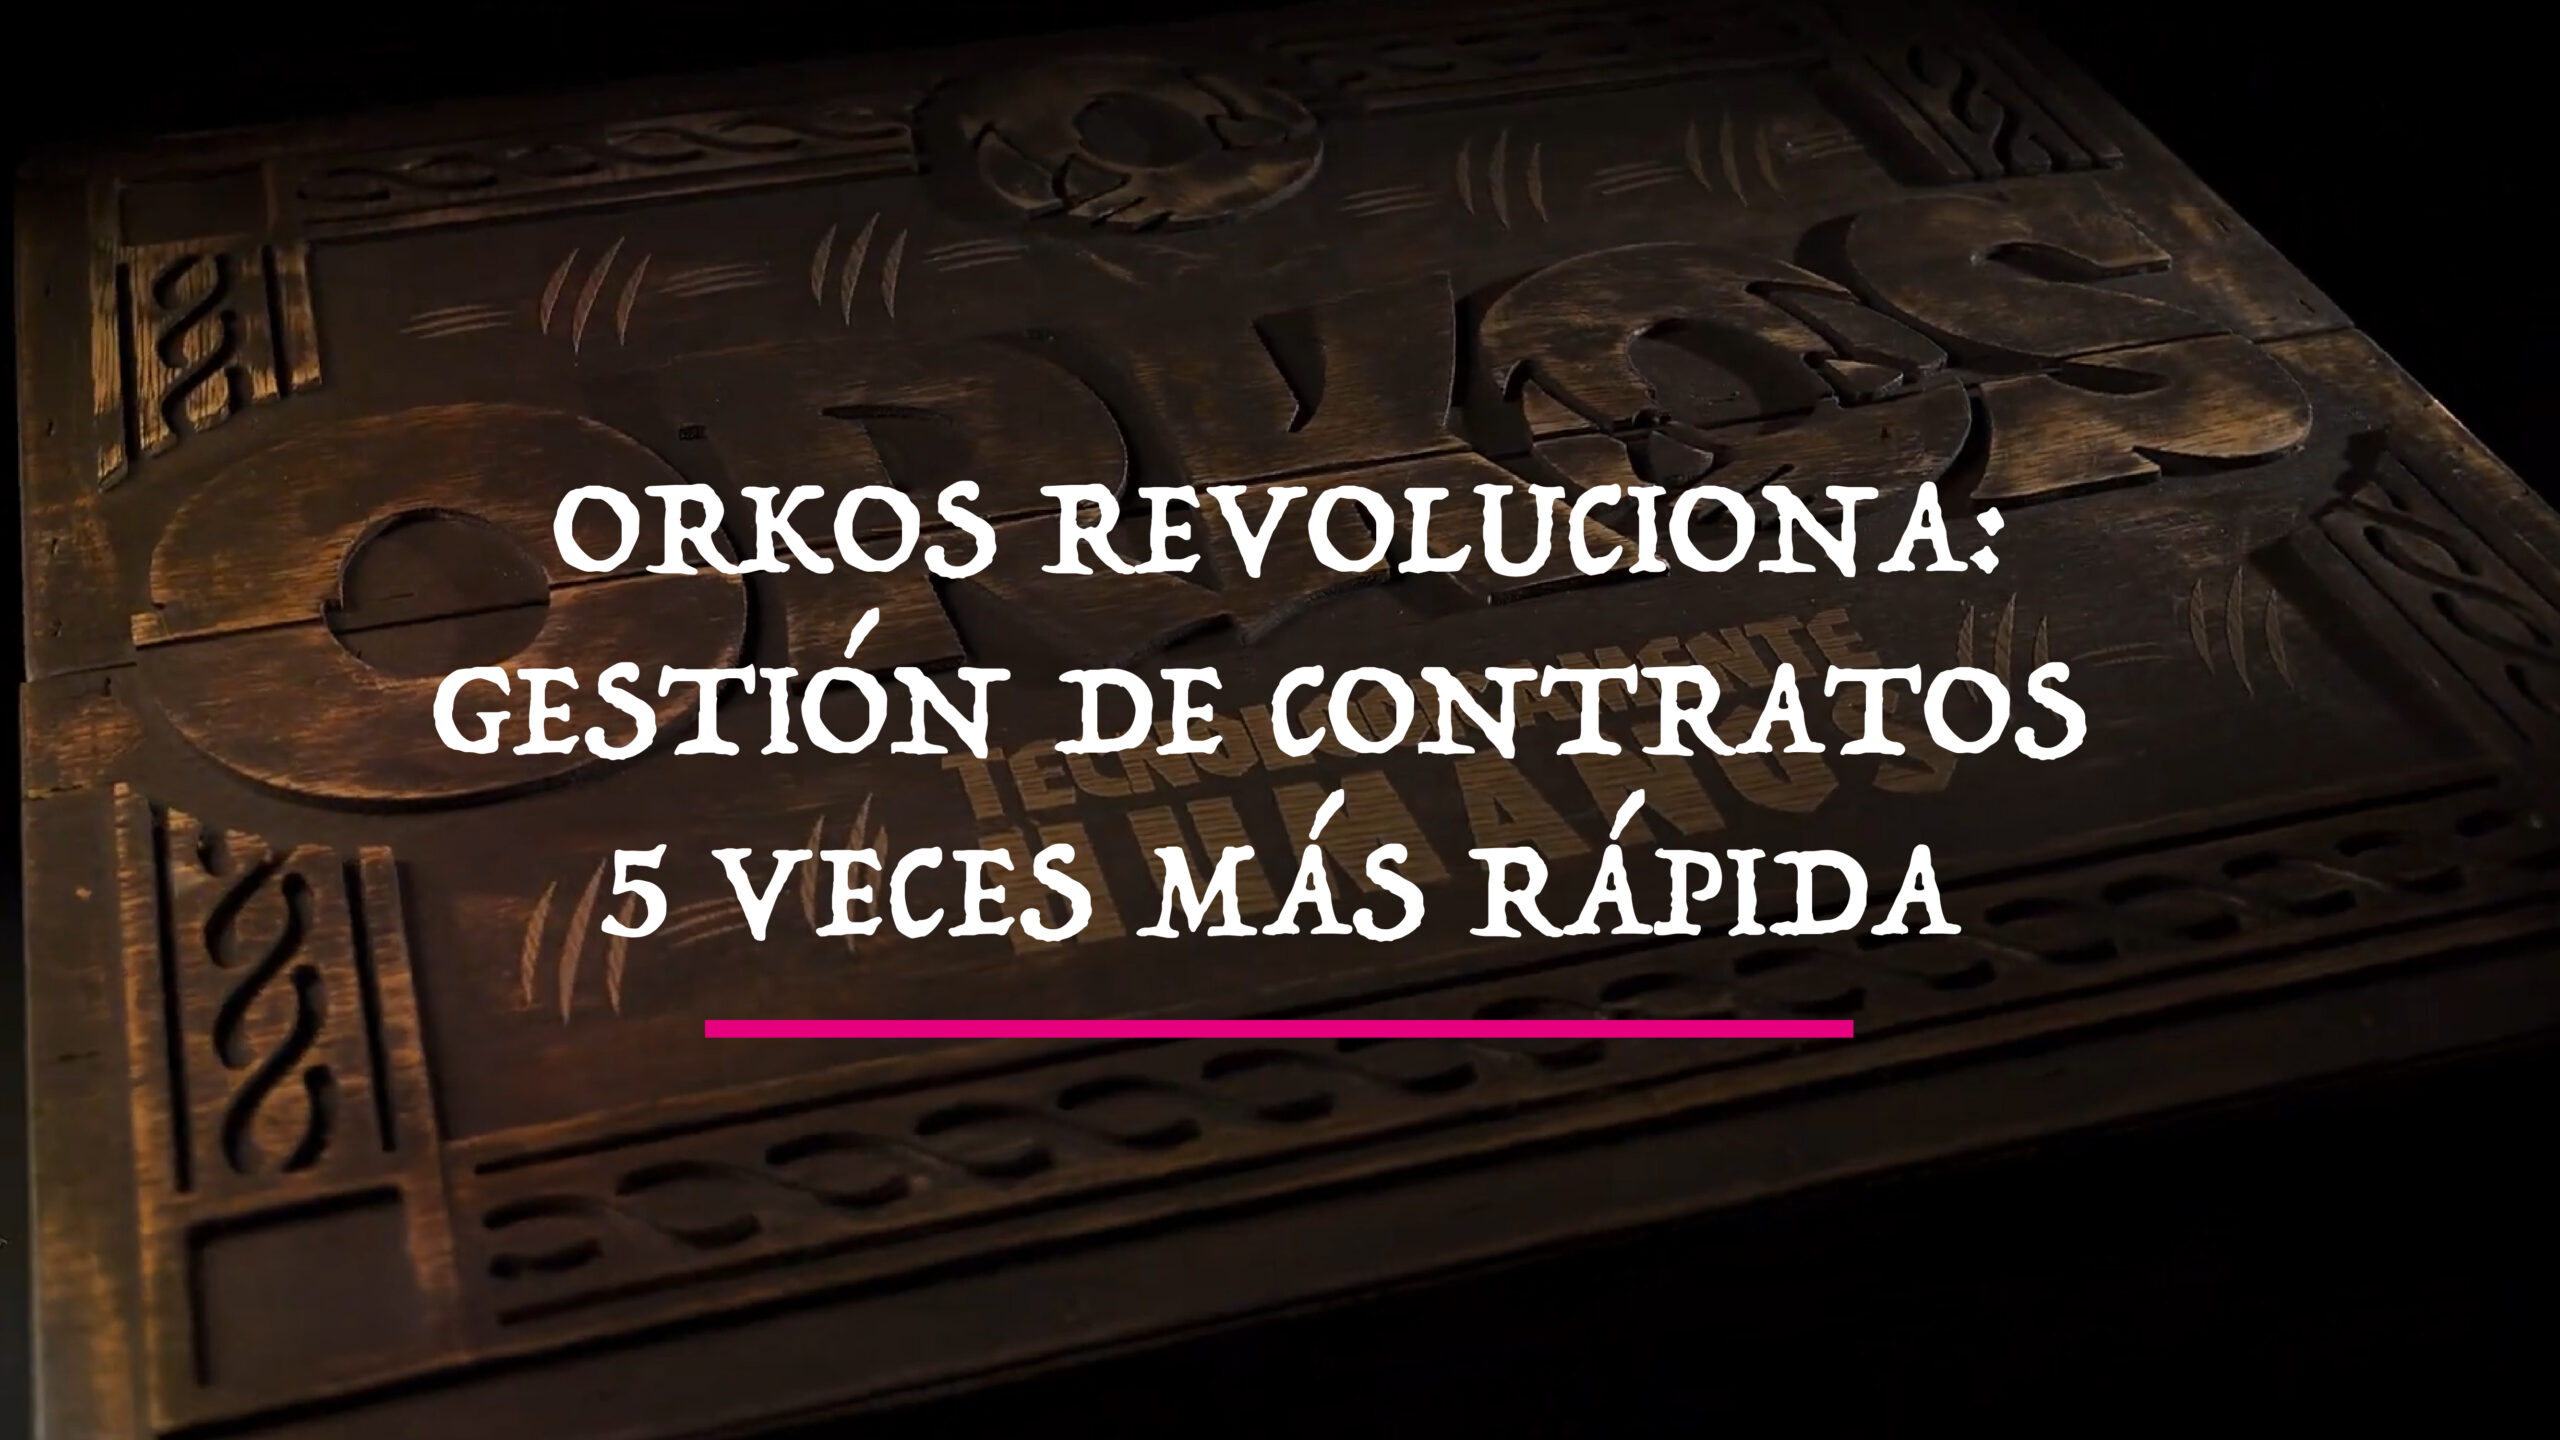 Orkos Revoluciona: Gestión de Contratos 5 veces más rápida